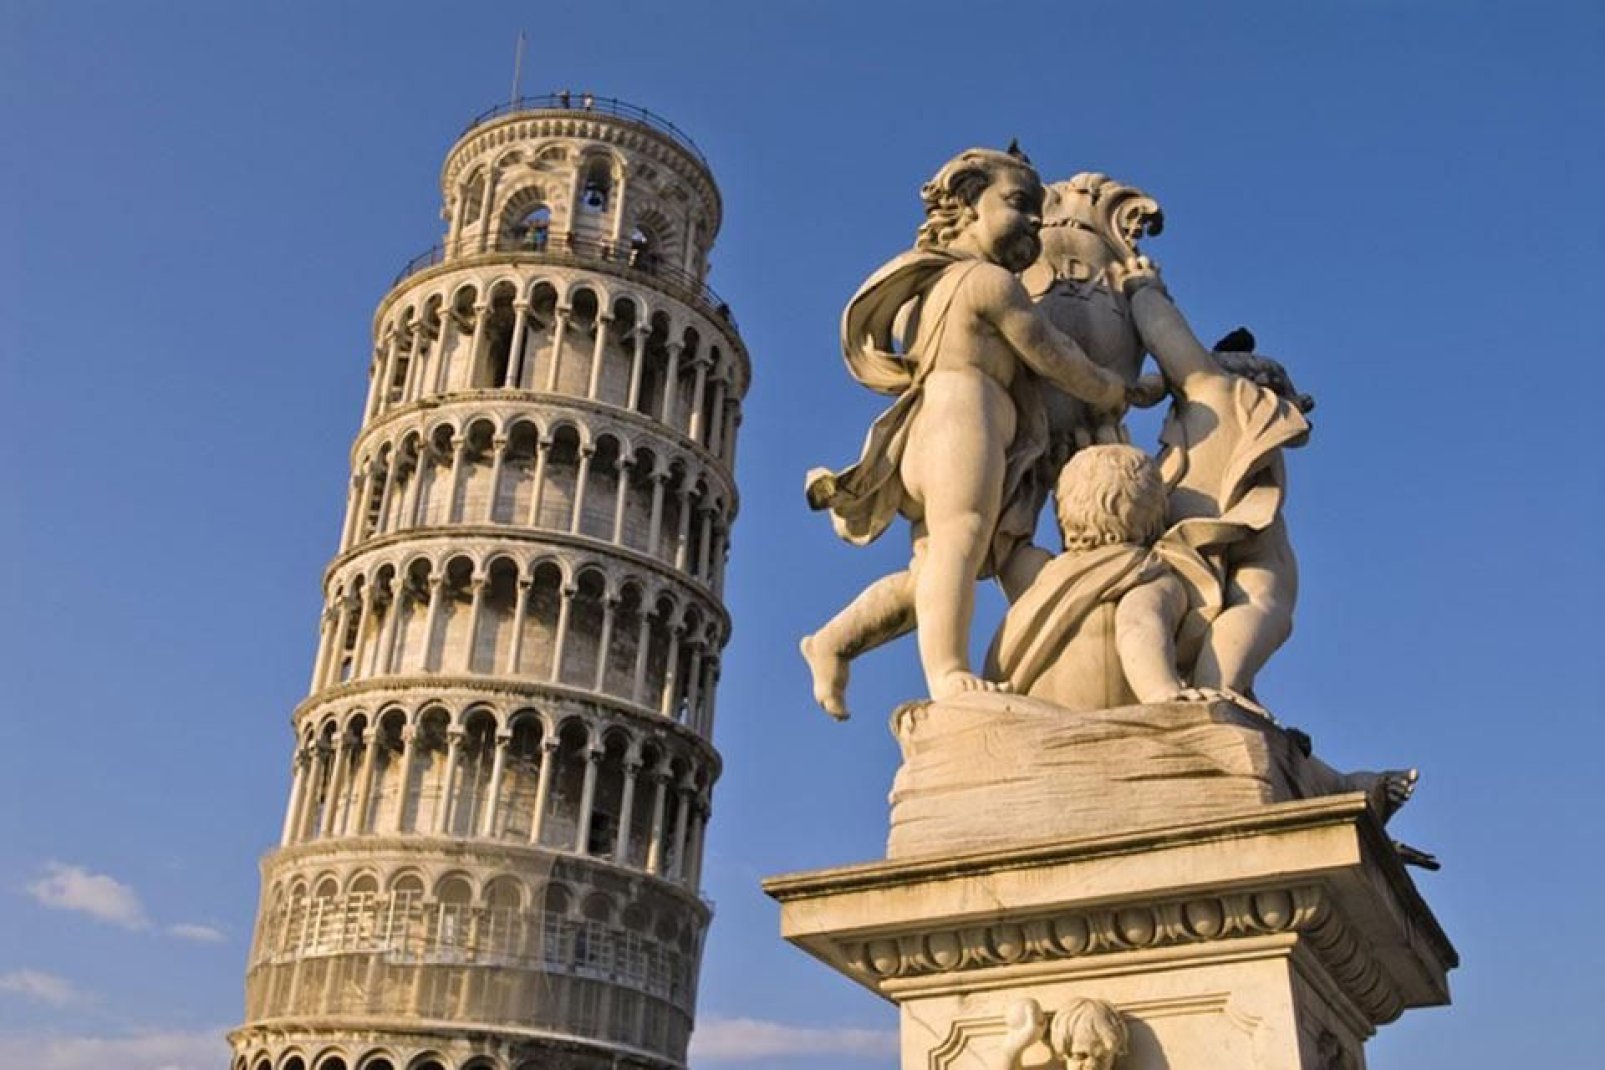 La Fontana dei Putti, situada en la Piazza dei Miracoli, en Pisa. De fondo se ve, como es habitual, la Torre inclinada.